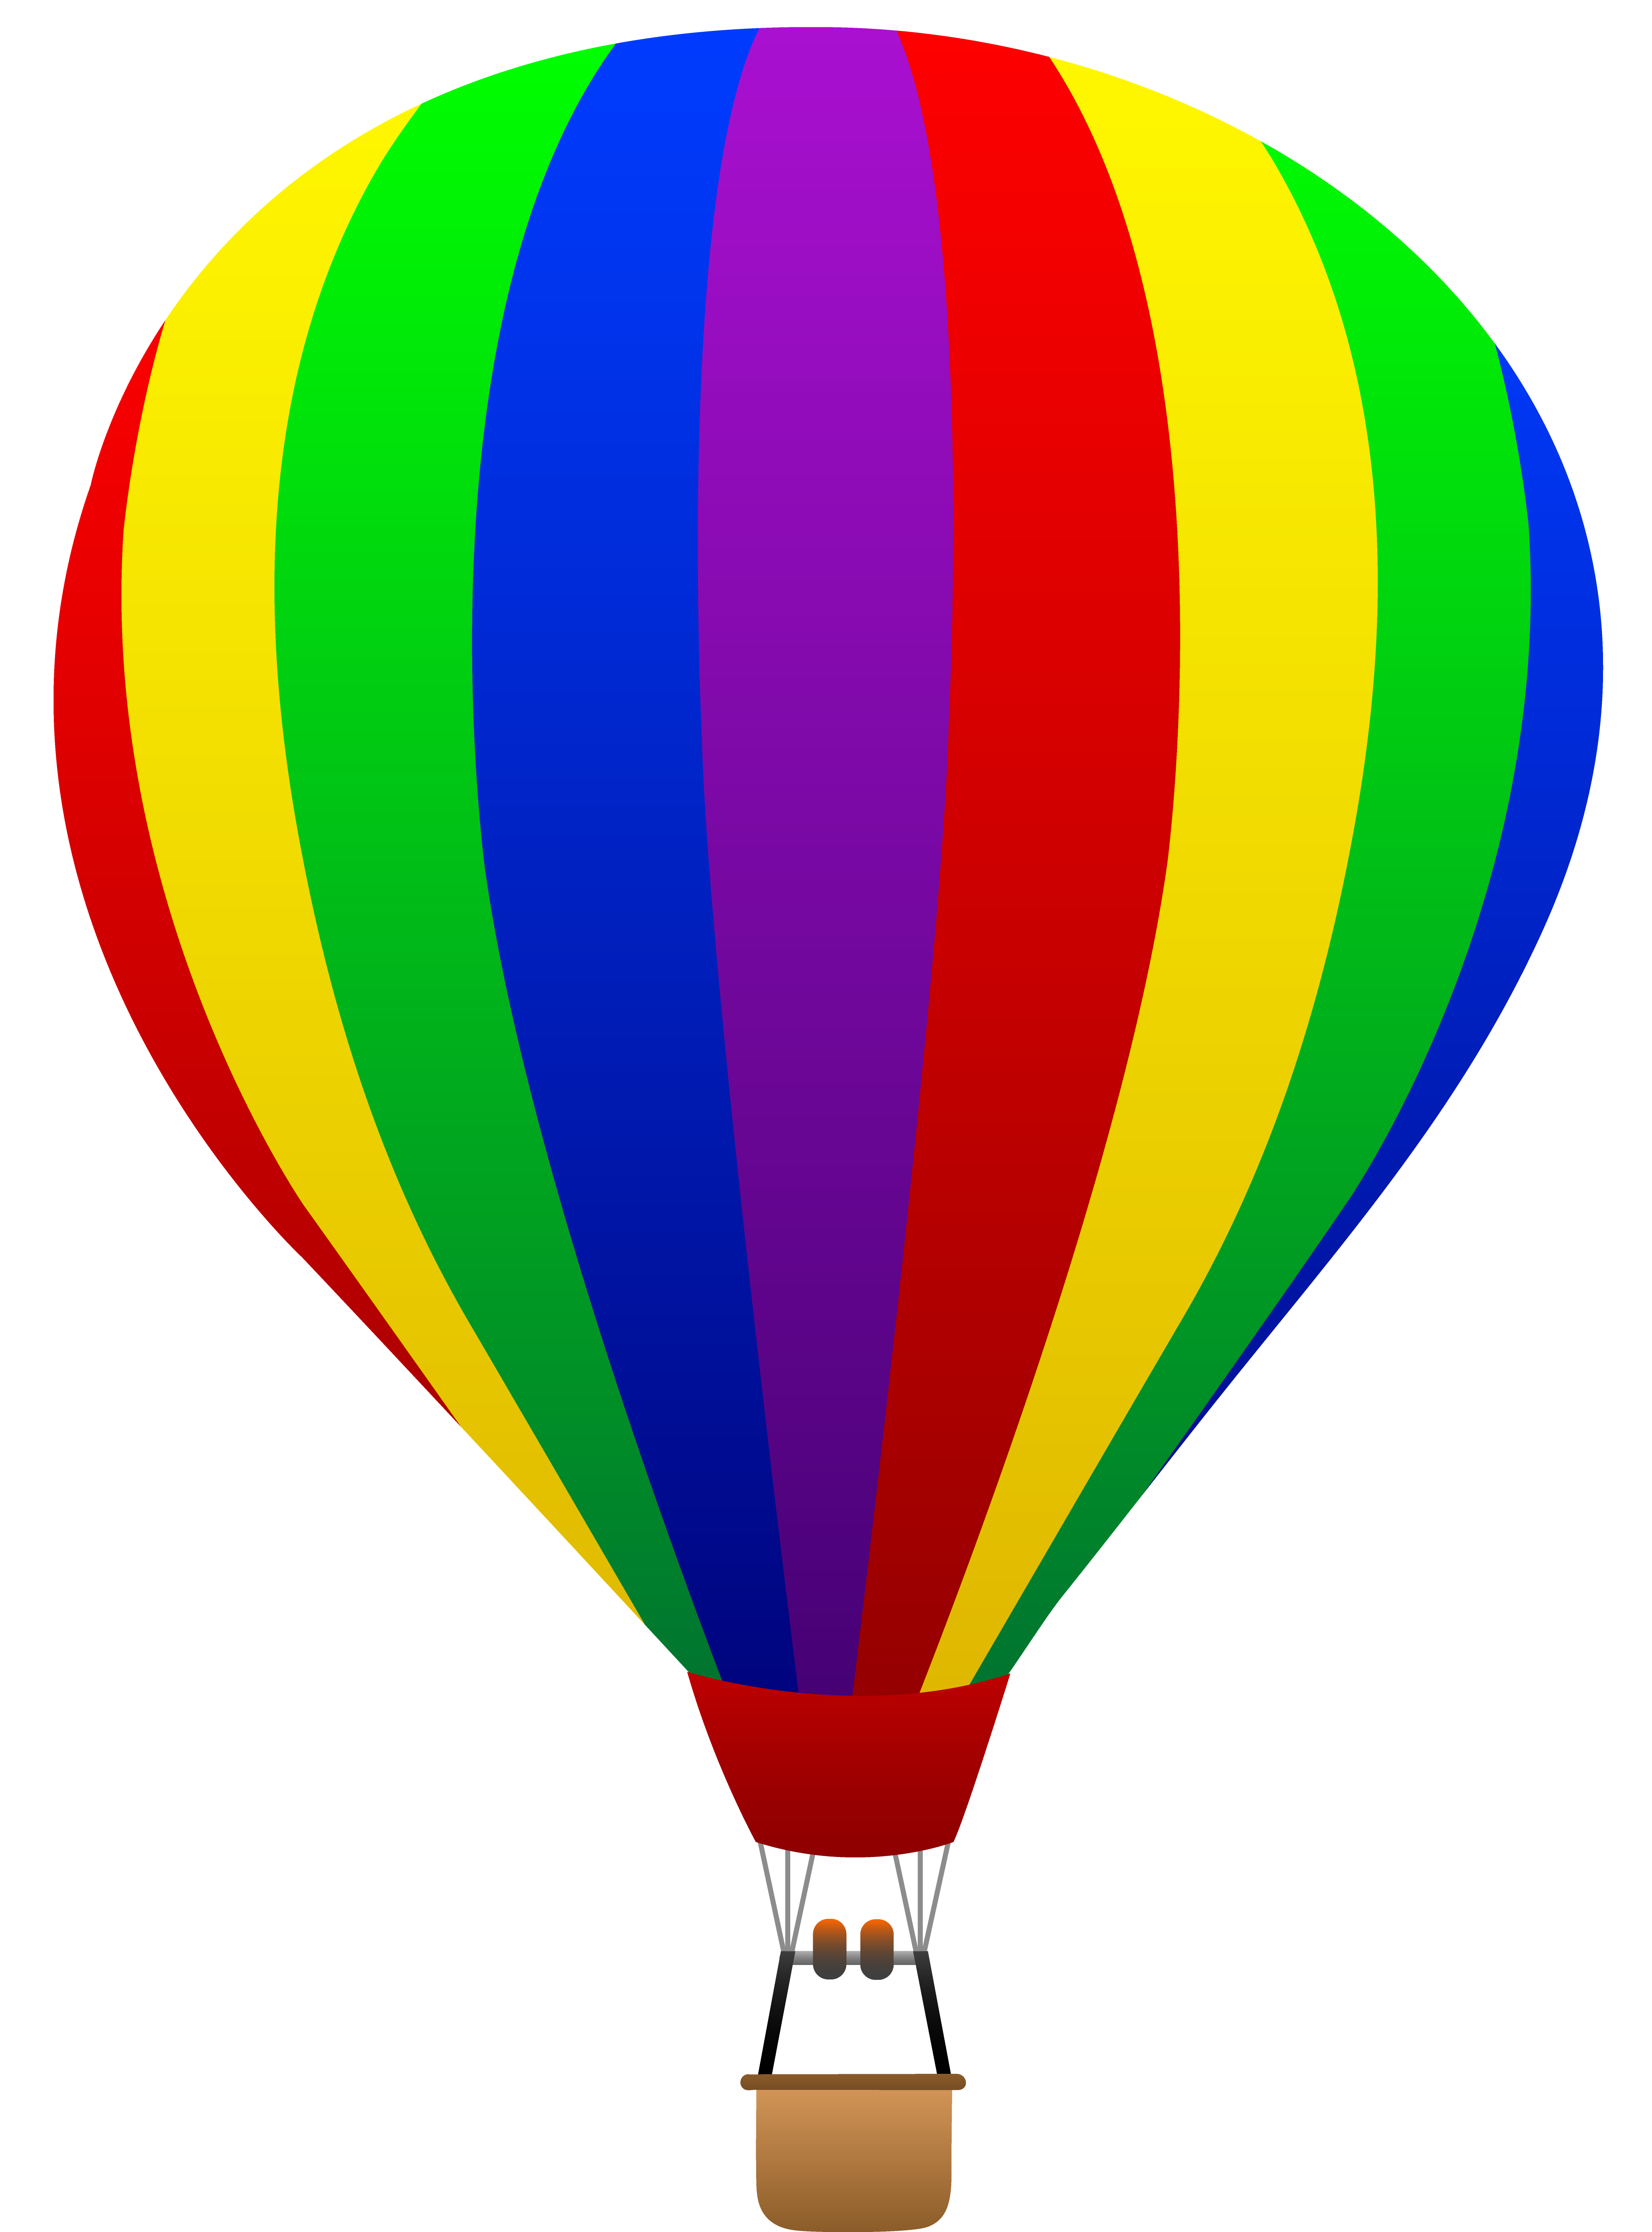 Free clip art of a fun rainbow striped hot air balloon | Sweet Clip ...